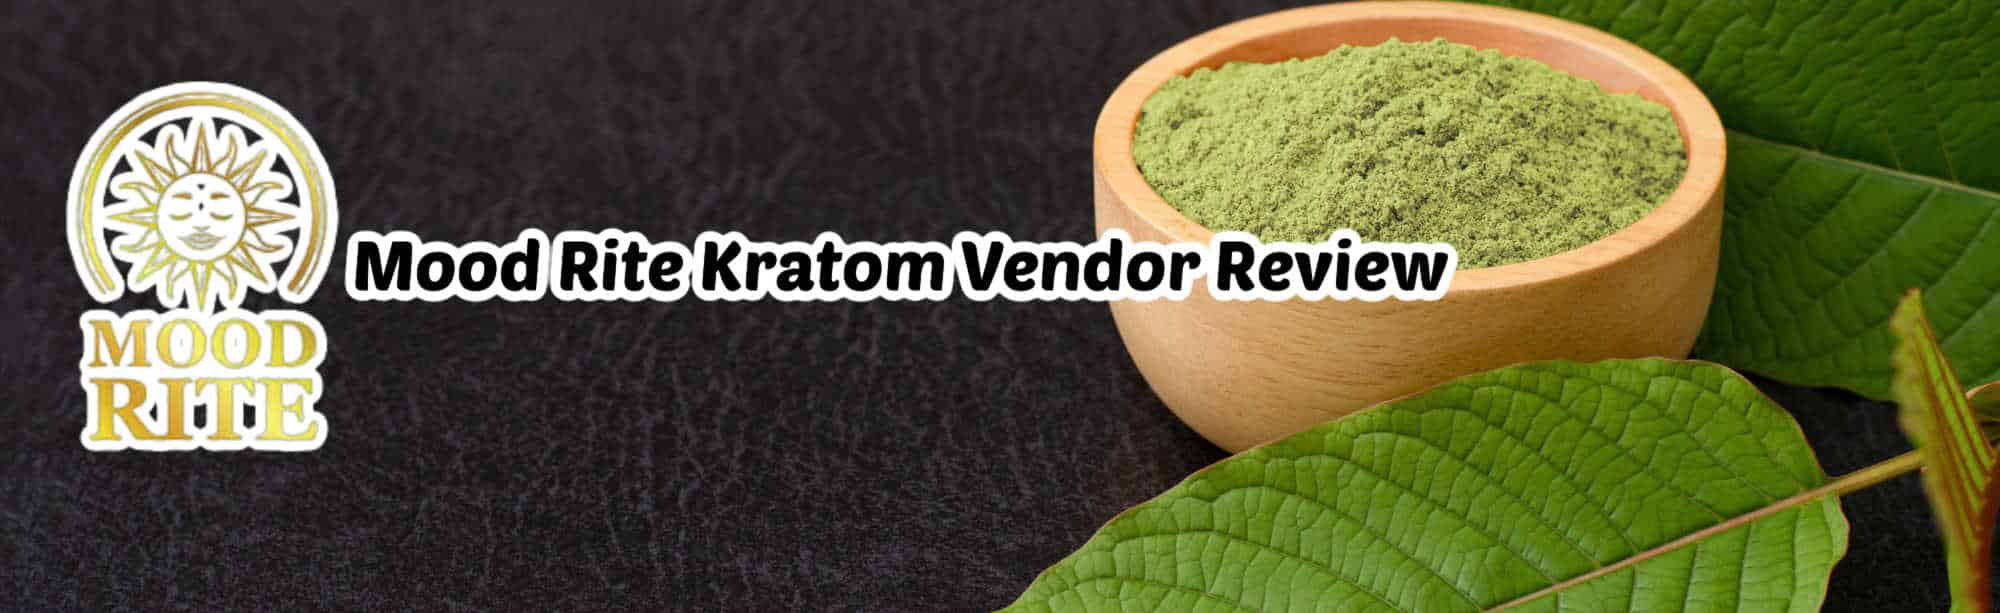 image of mood rite kratom vendor review